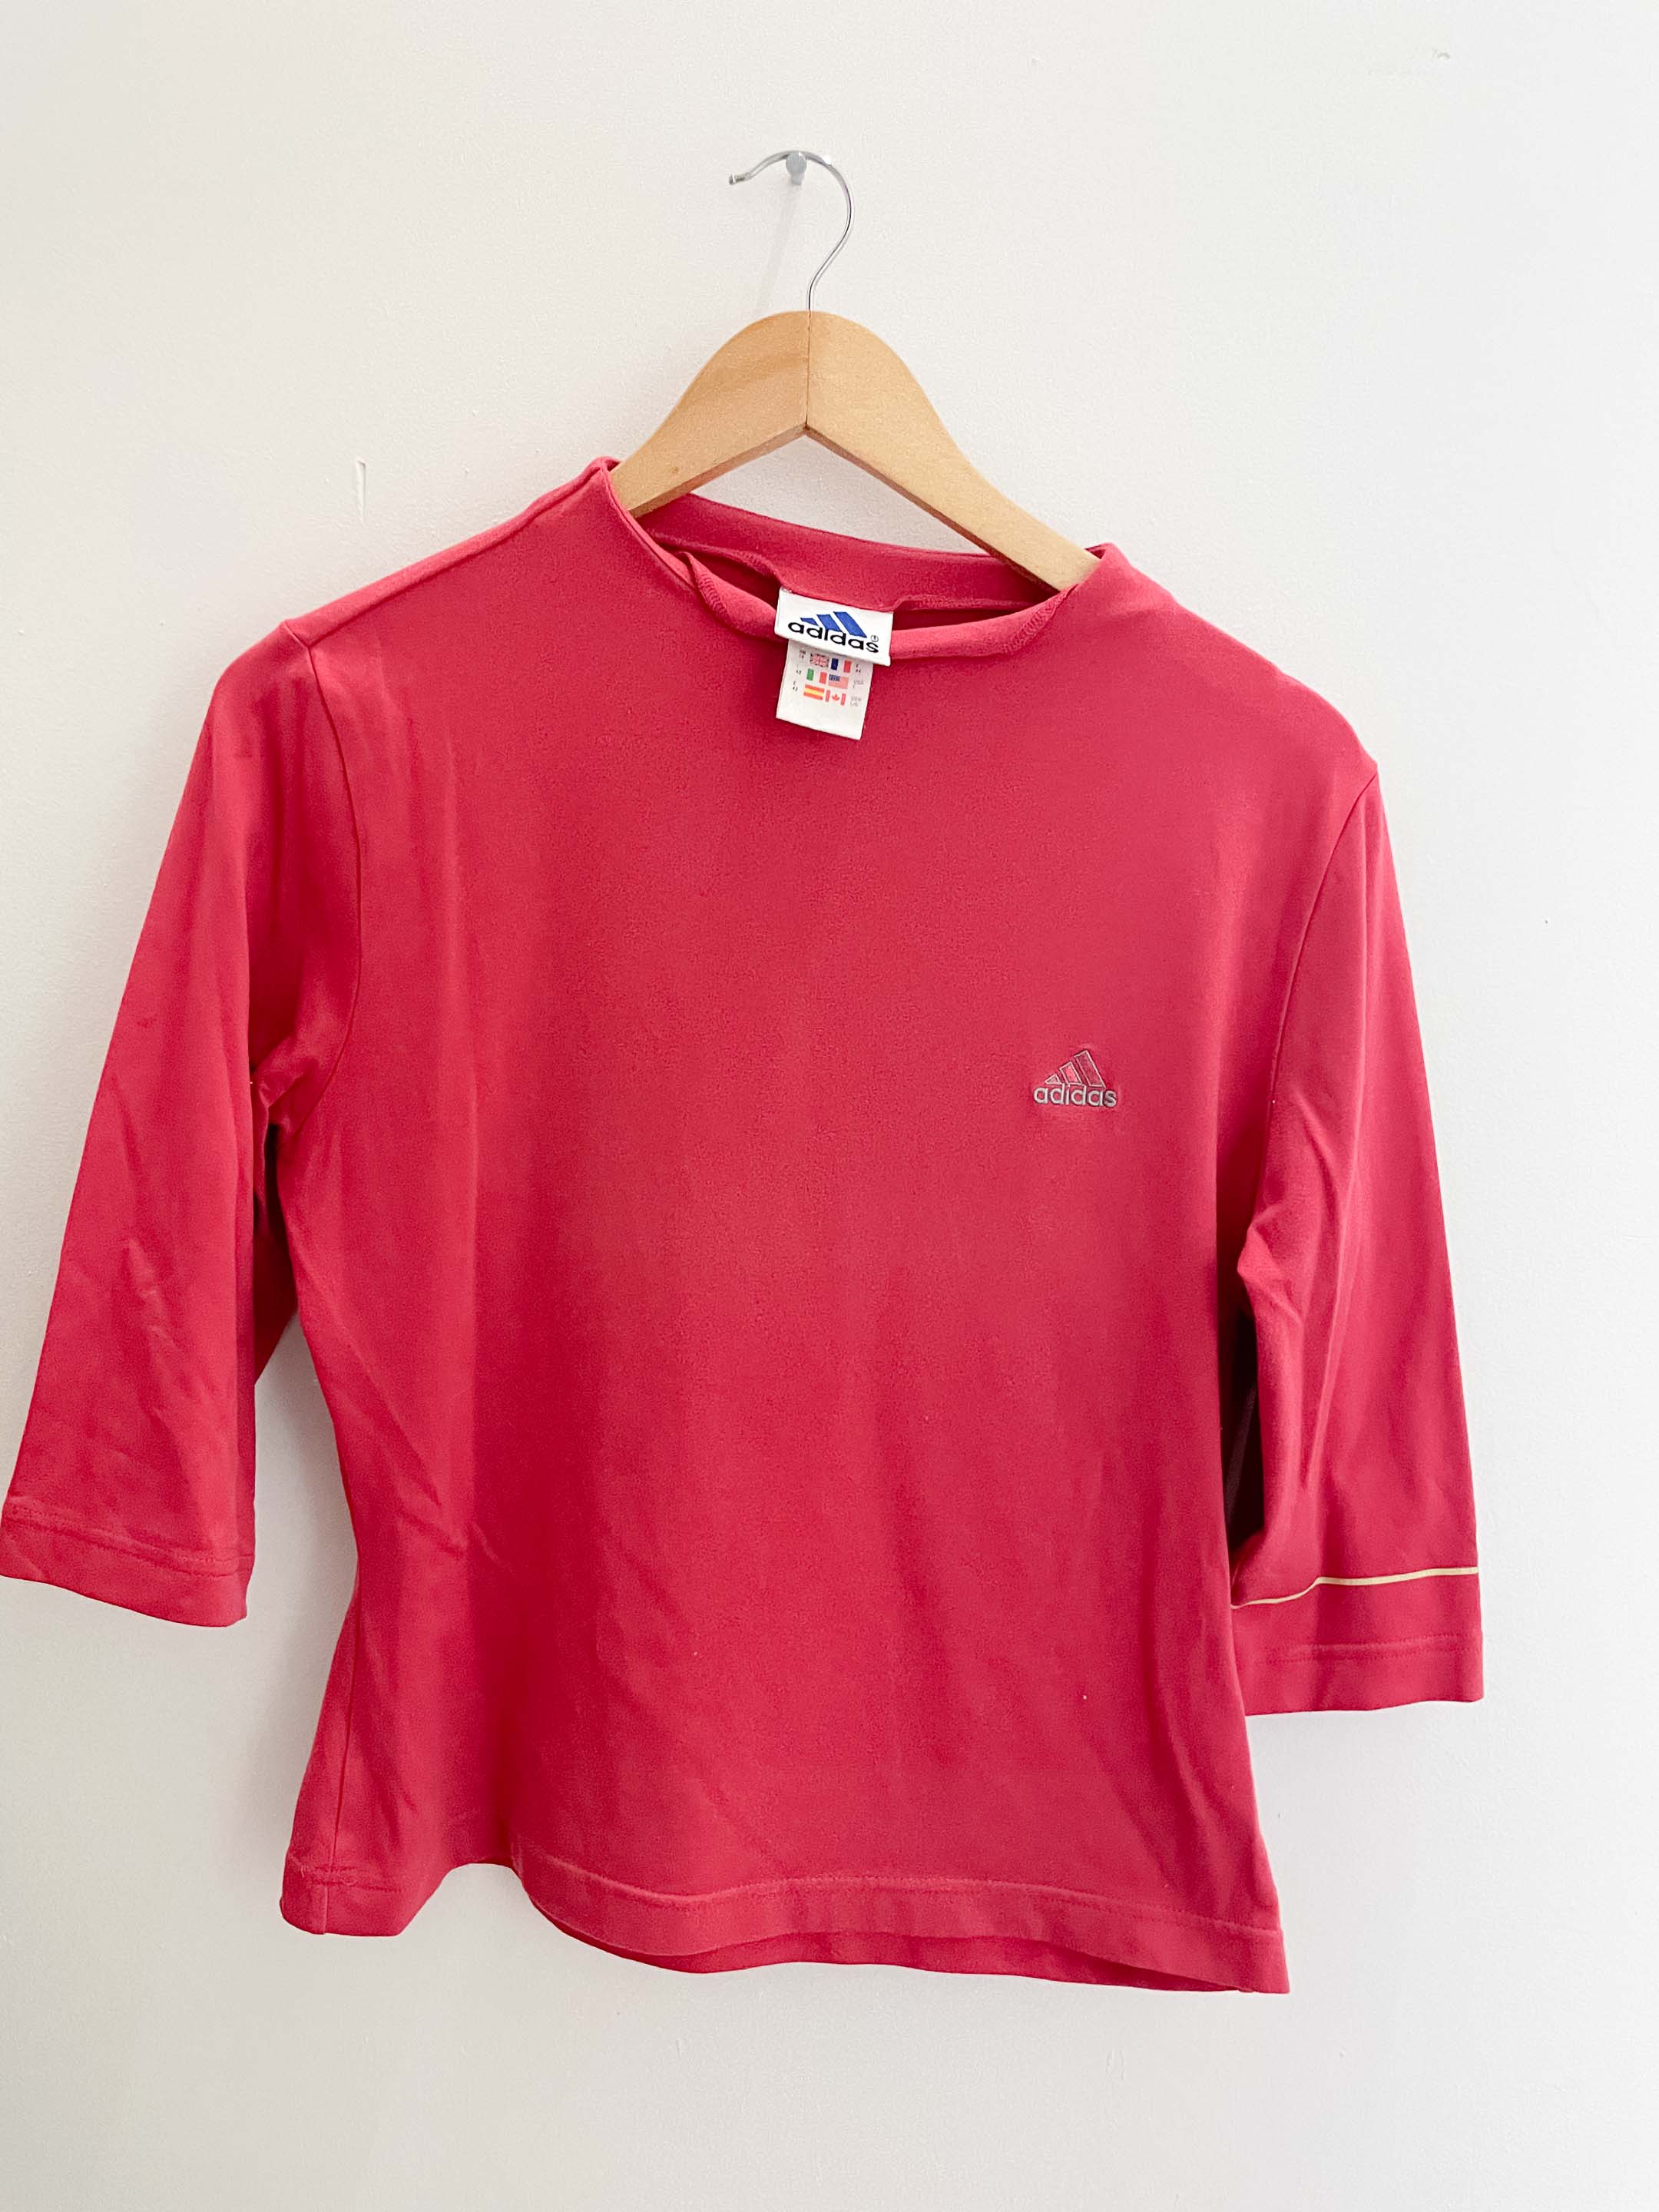 Vintage adidas pink womens medium tshirt